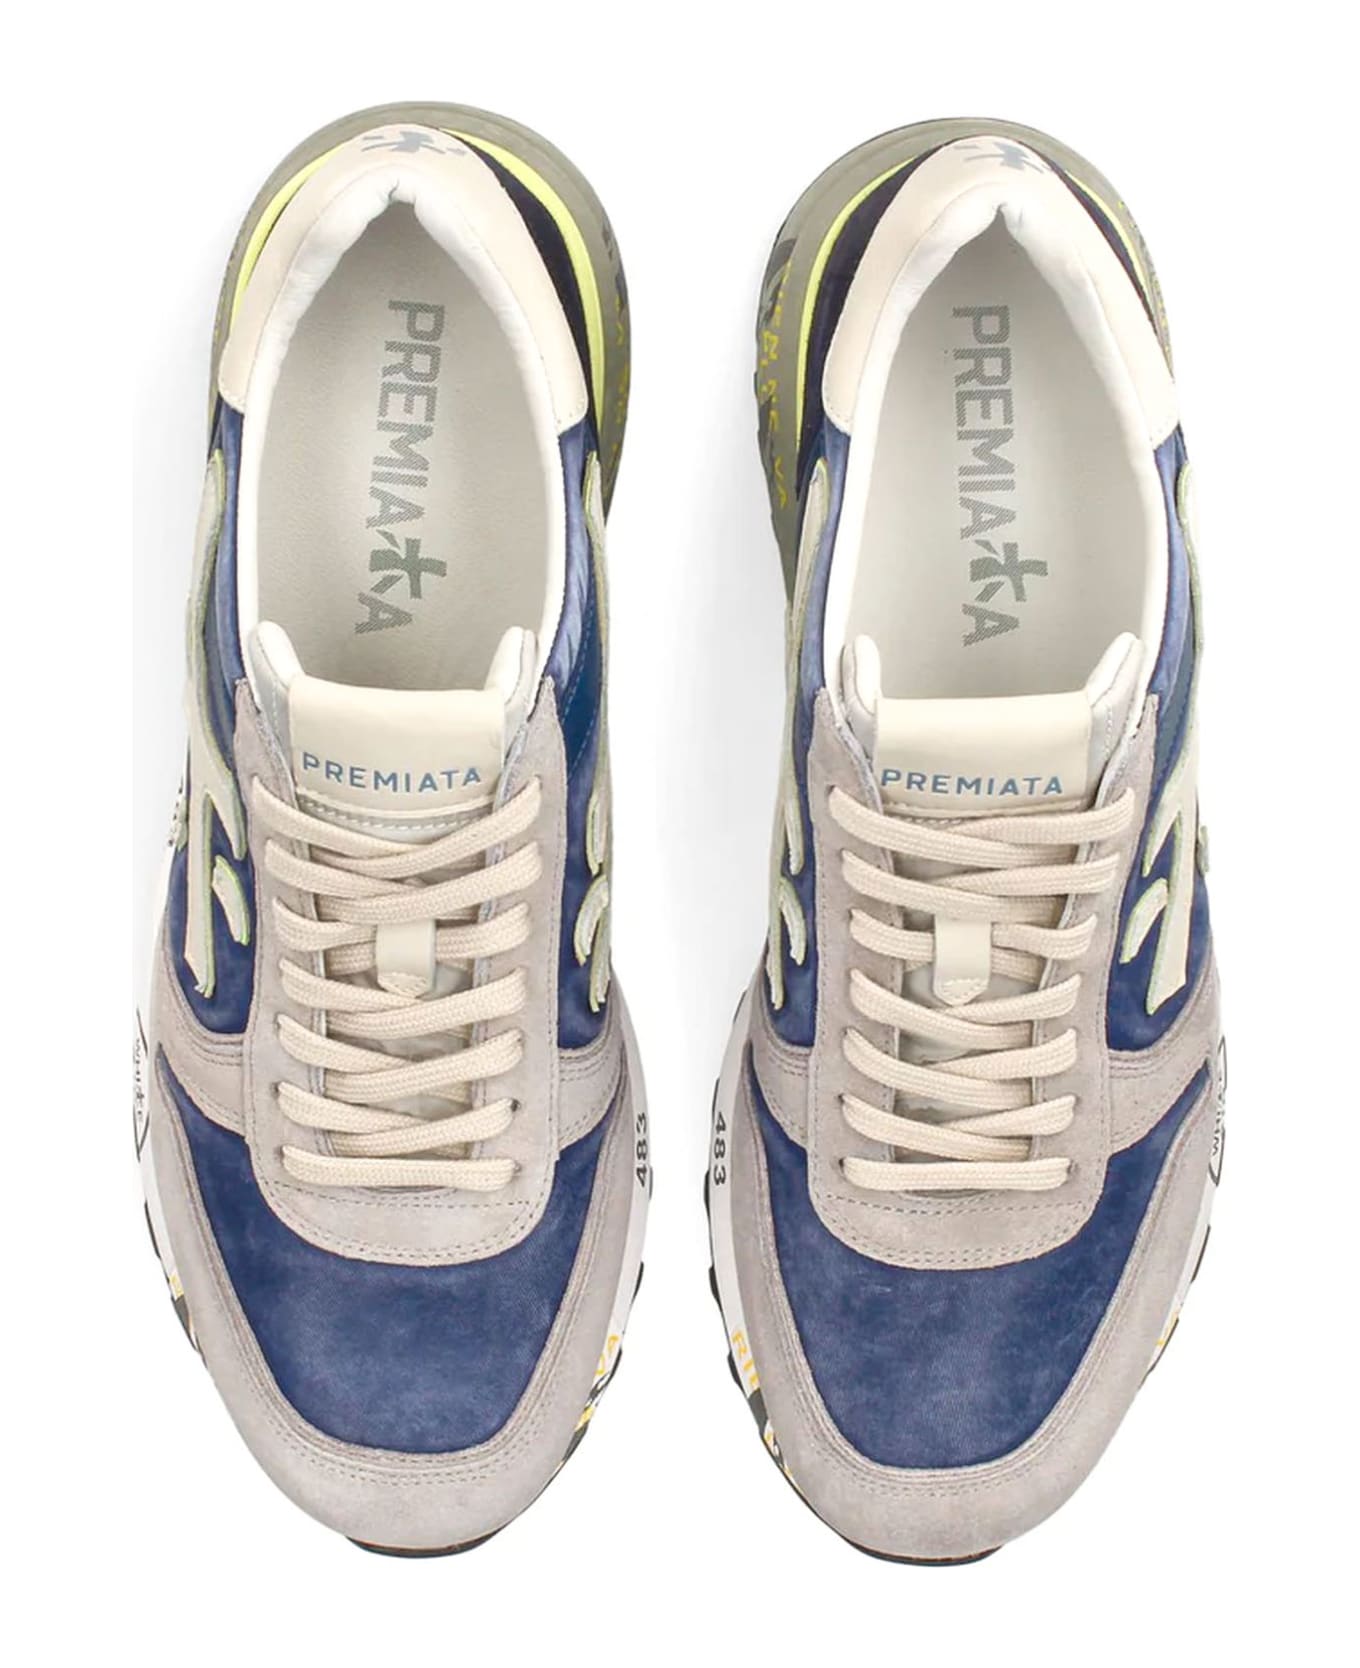 Premiata Mick Sneakers - BLUE/grey スニーカー